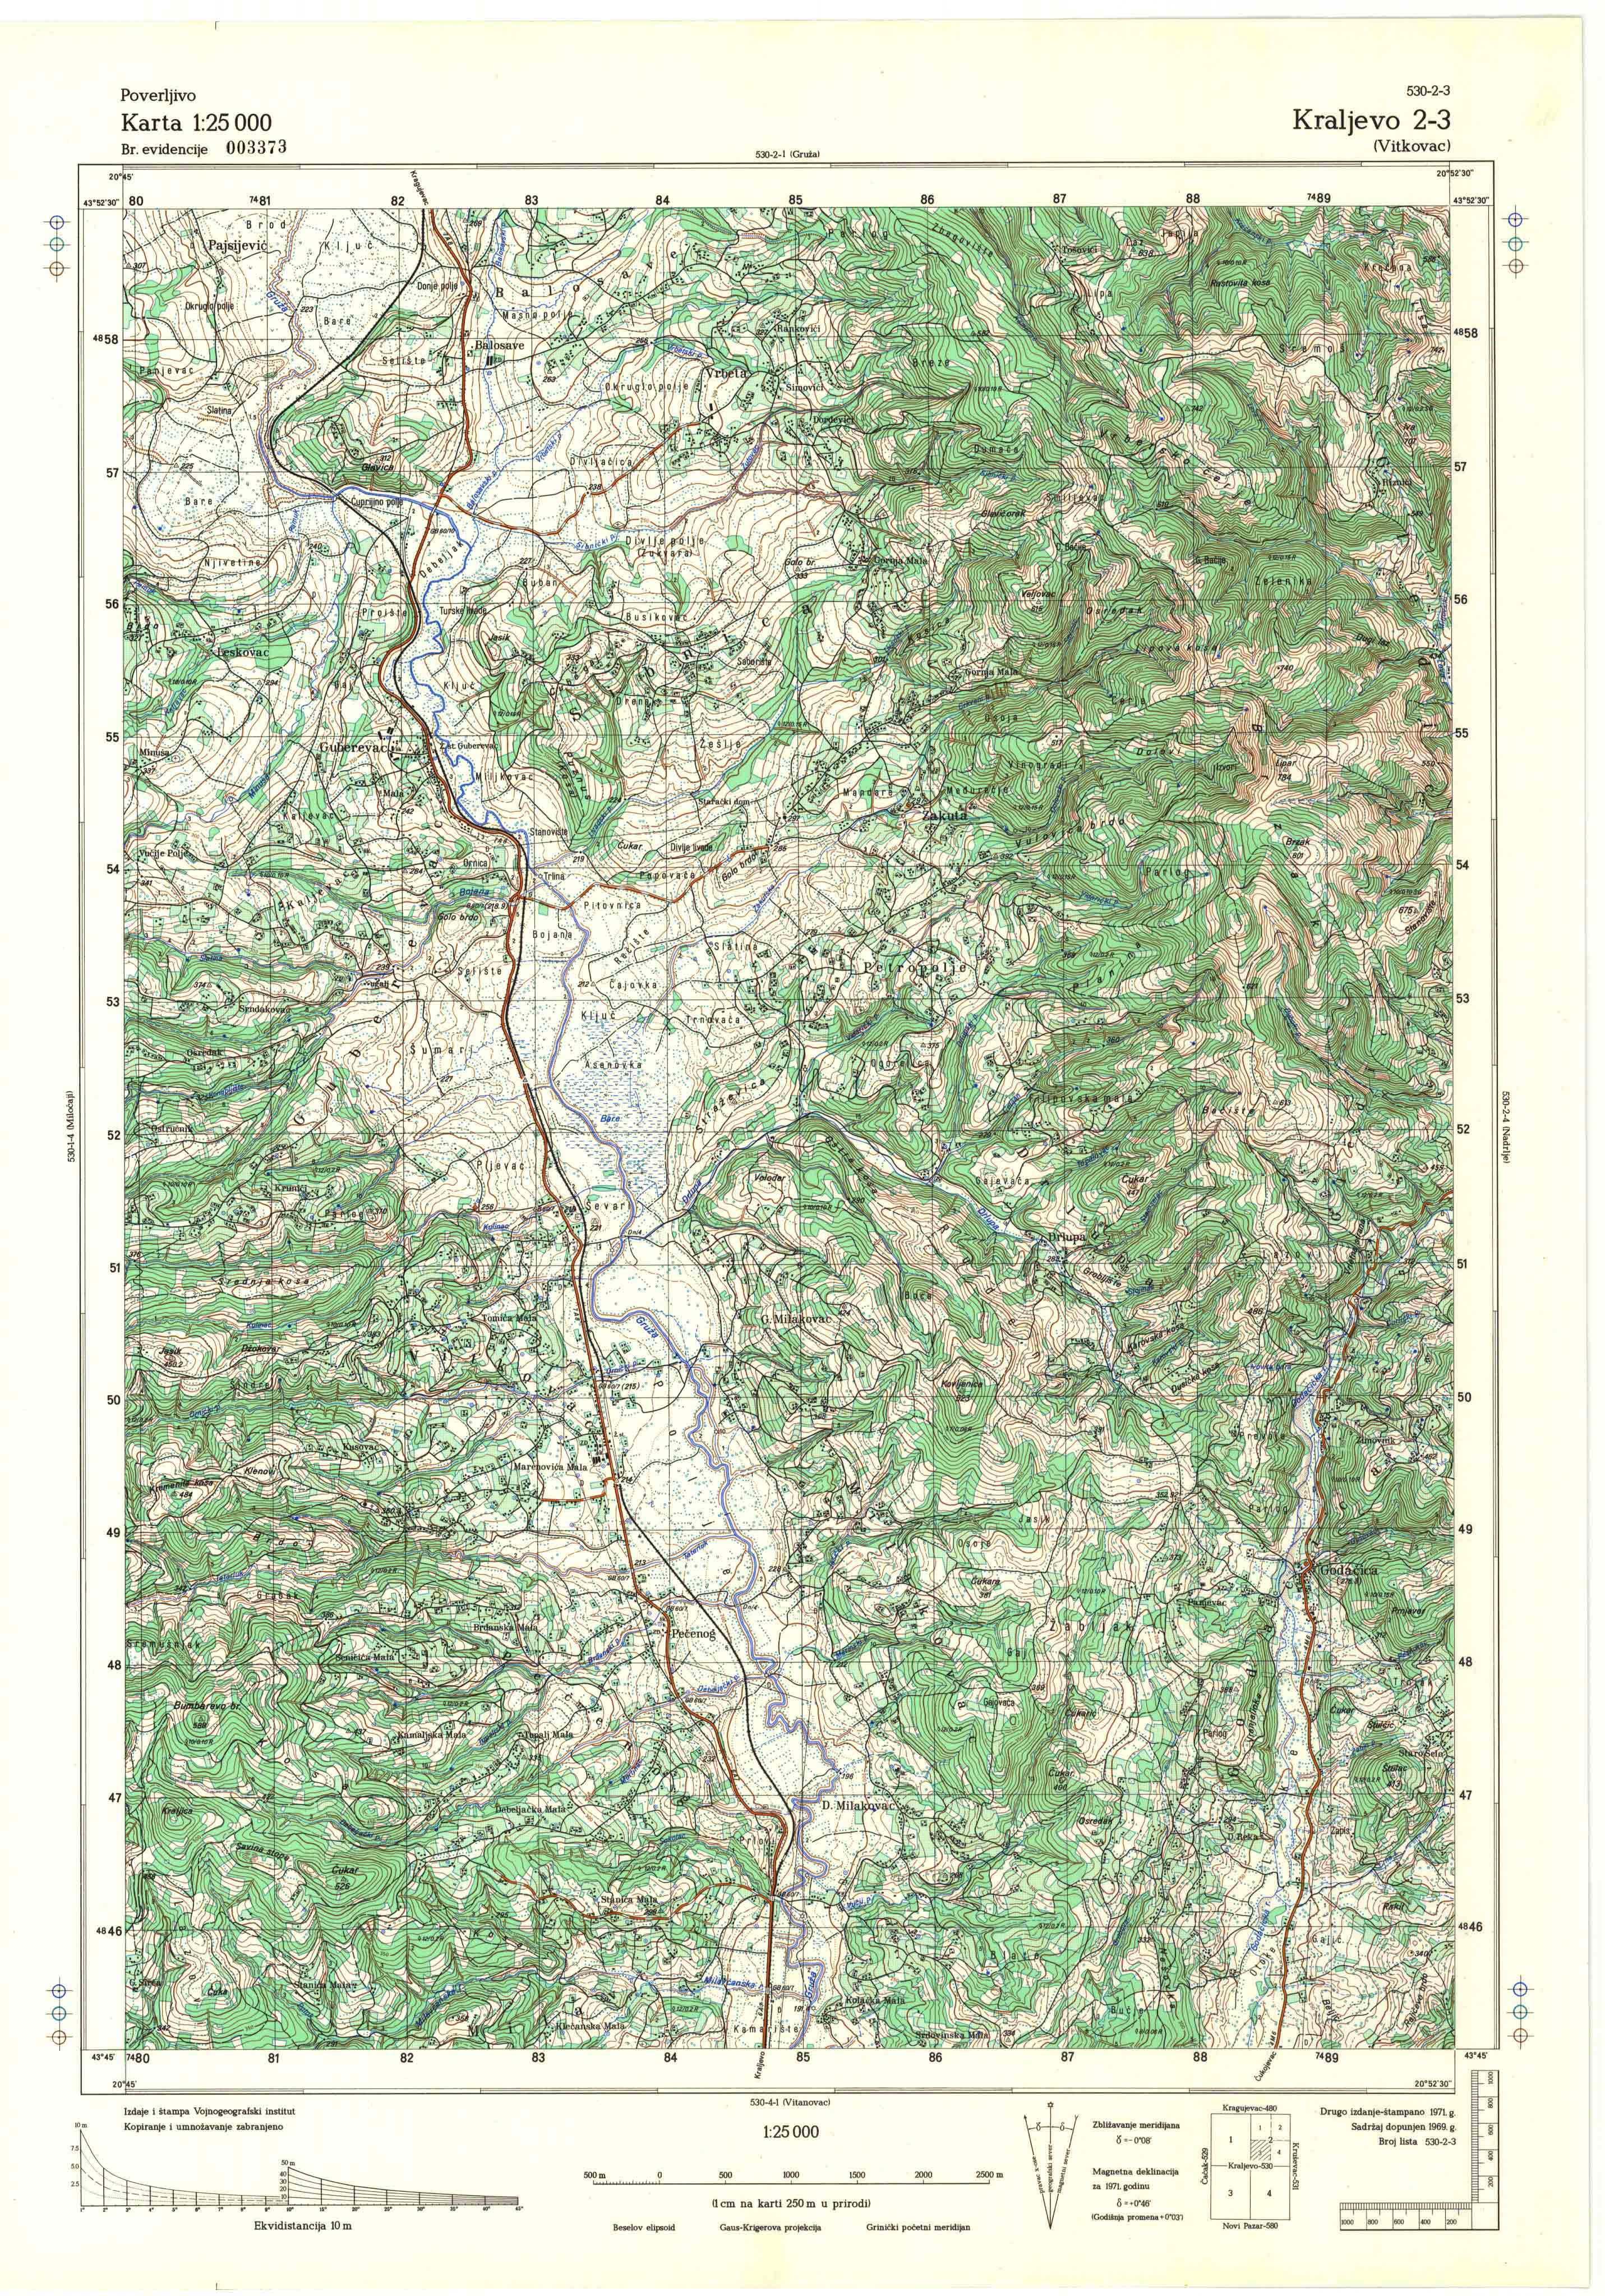  topografska karta srbije 25000 JNA  Kraljevo